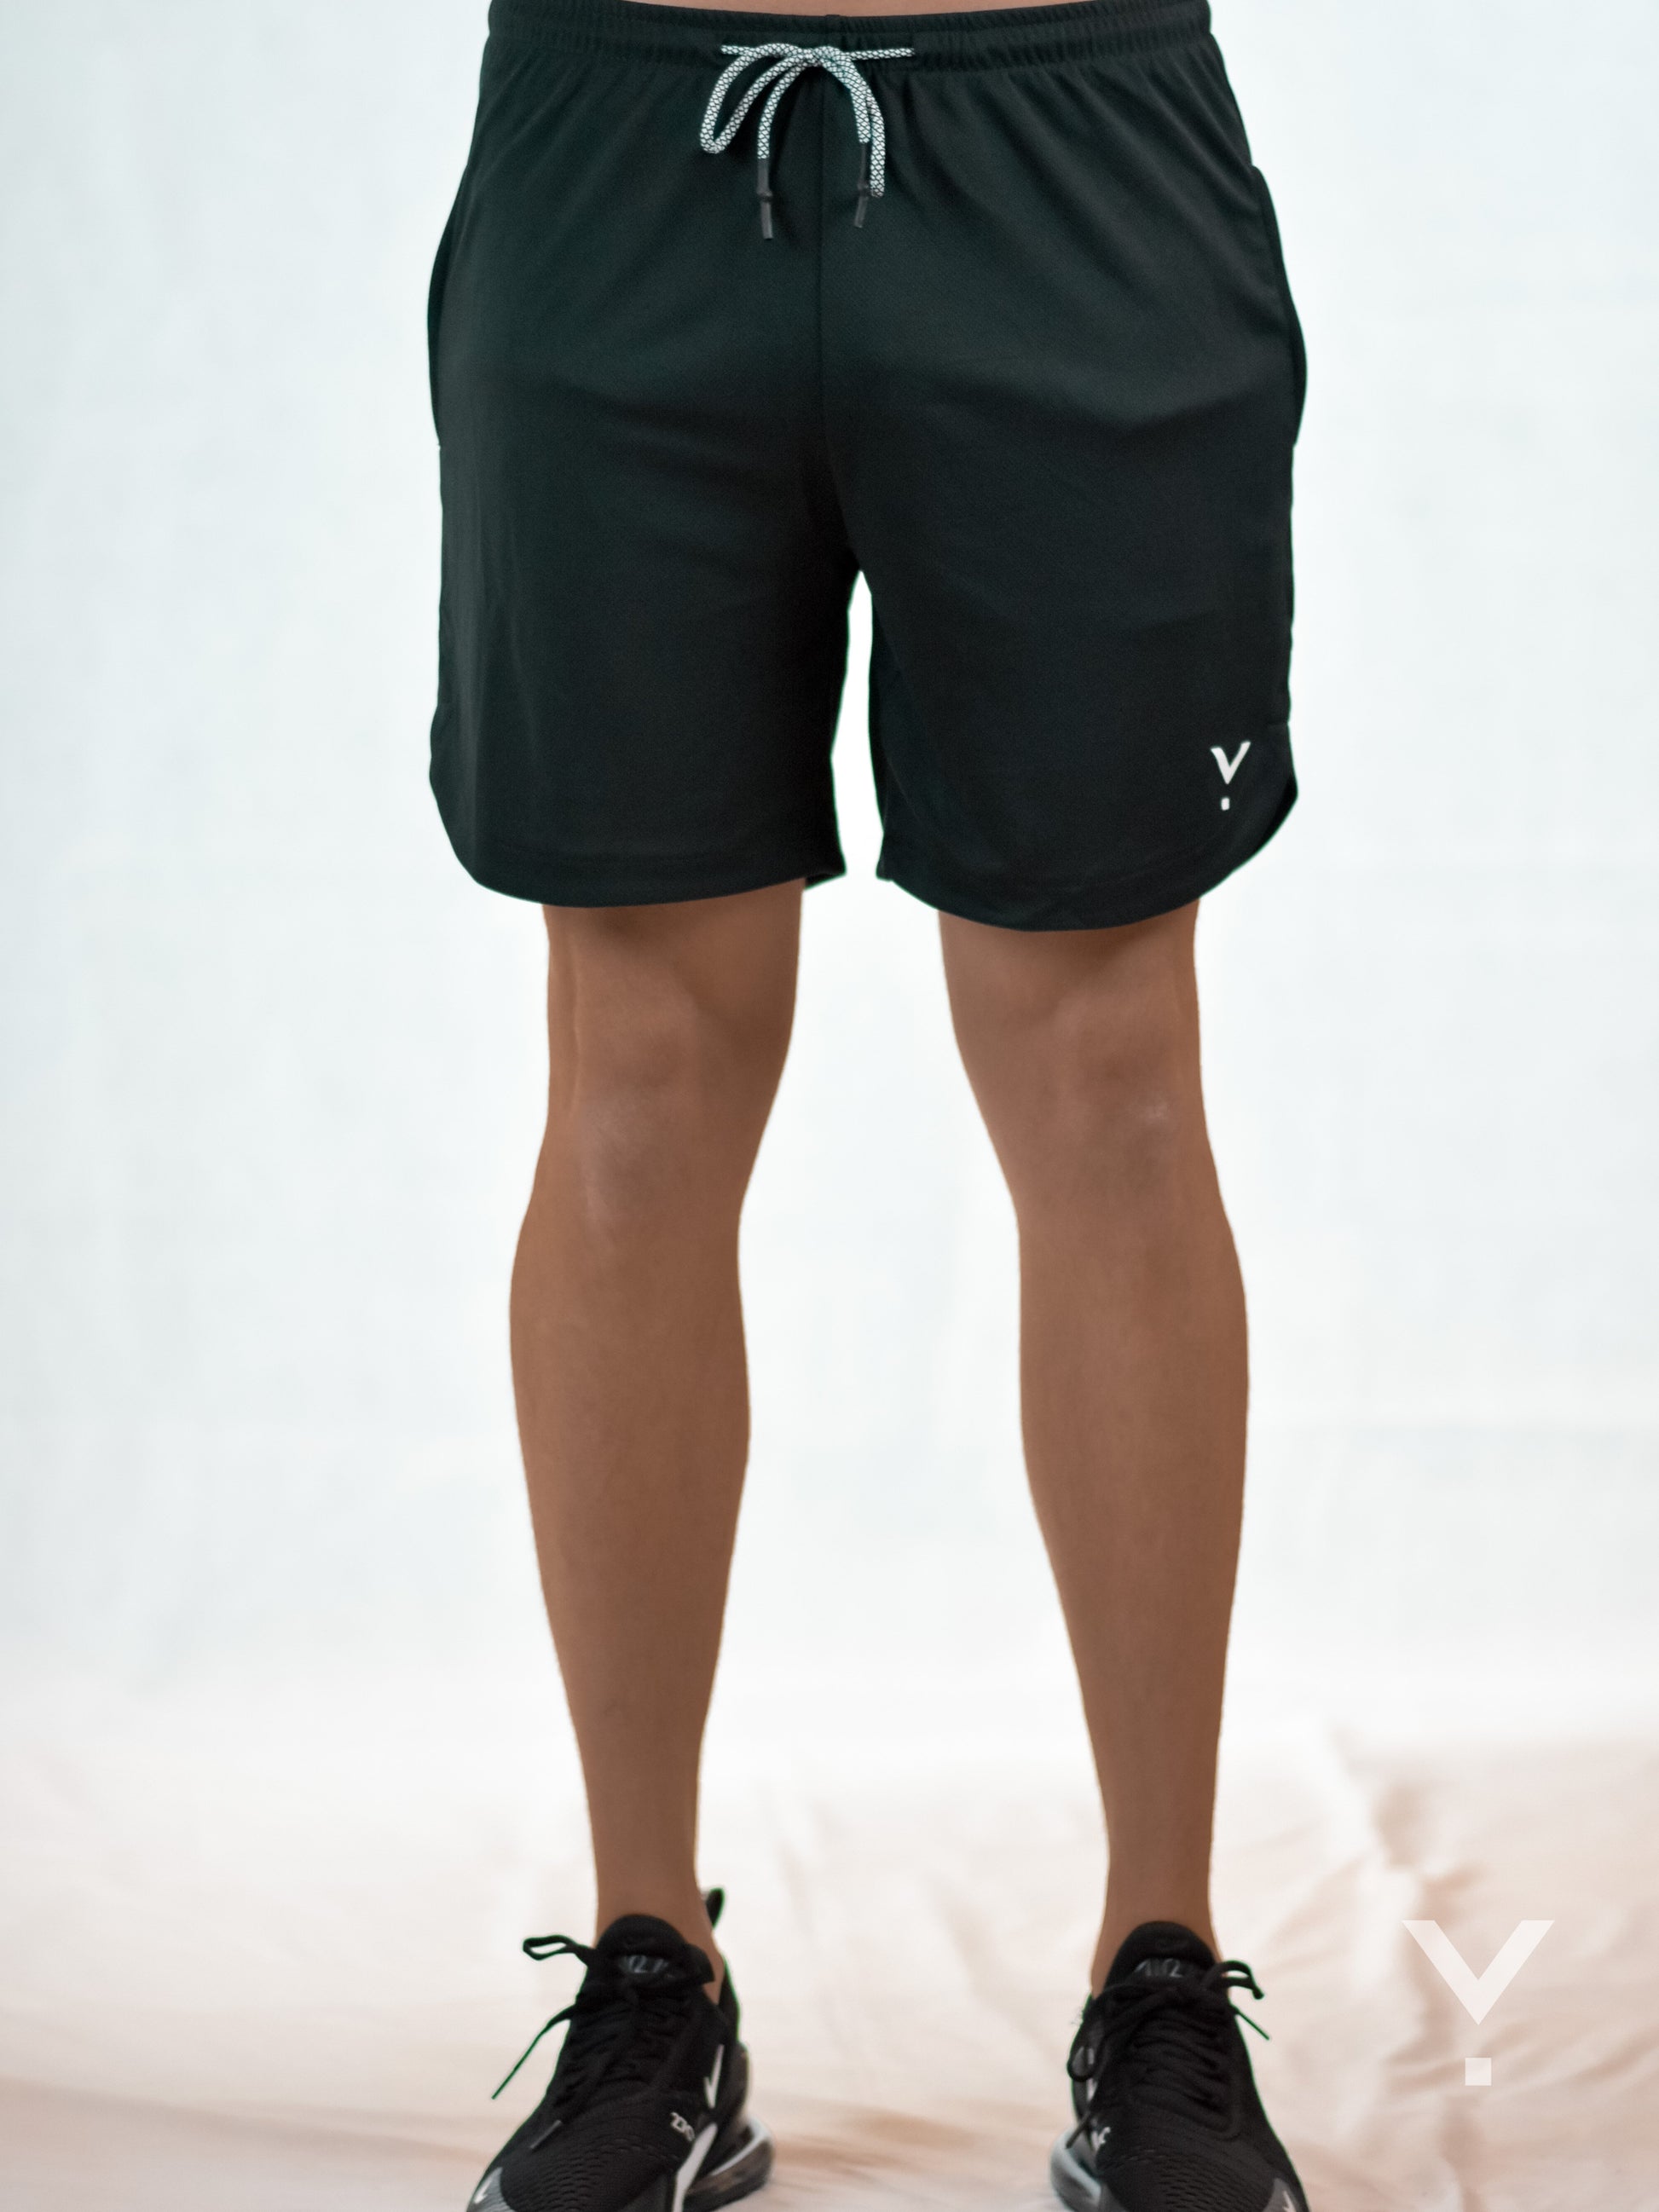 Velocity Shorts Black - Mens Shorts | AVAYOS